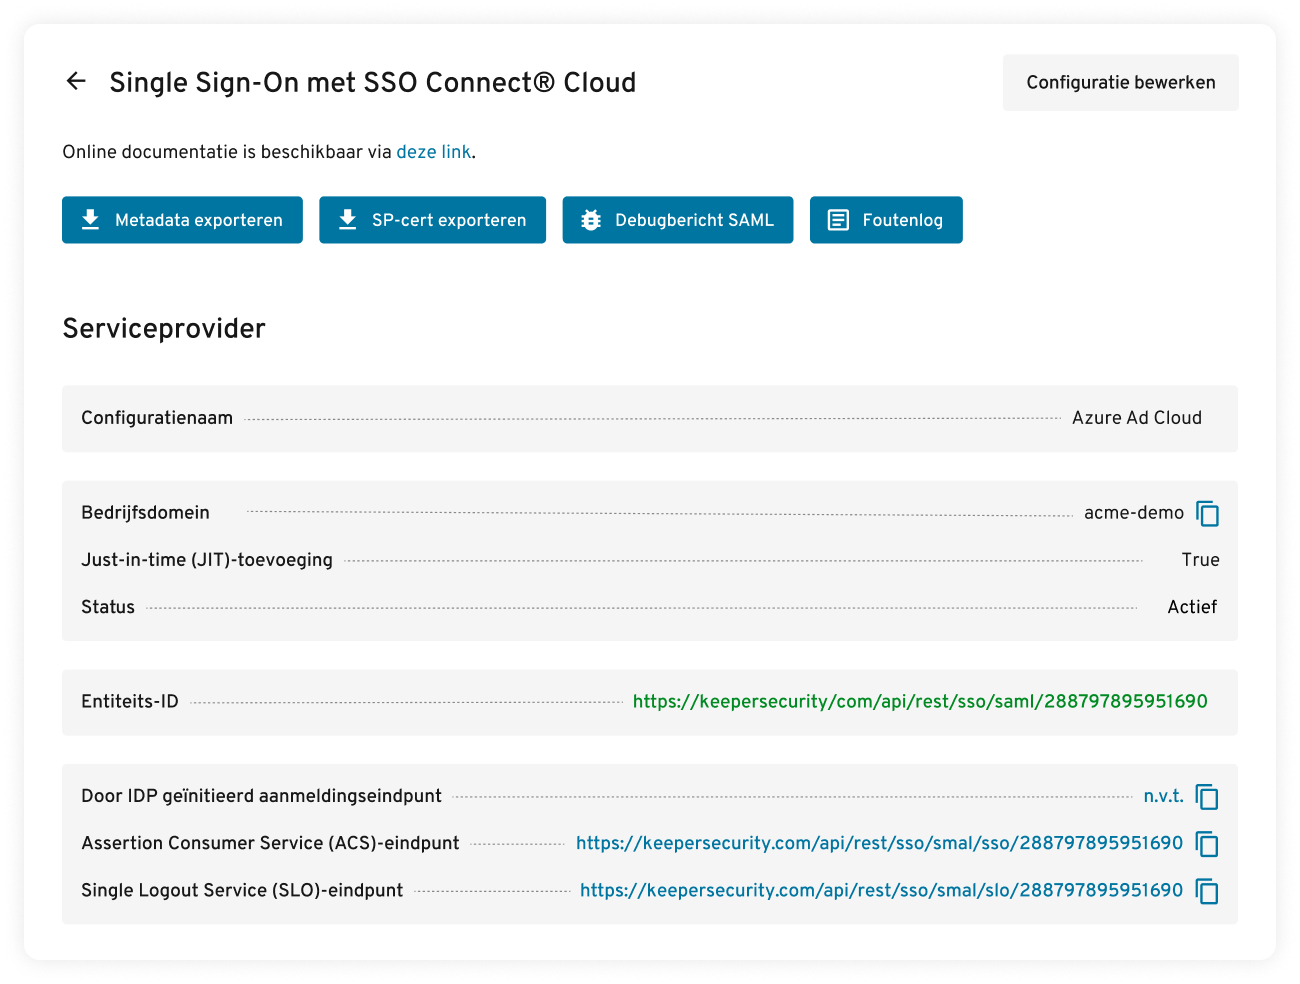 SAML 2.0-authenticatie met SSO Connect Cloud